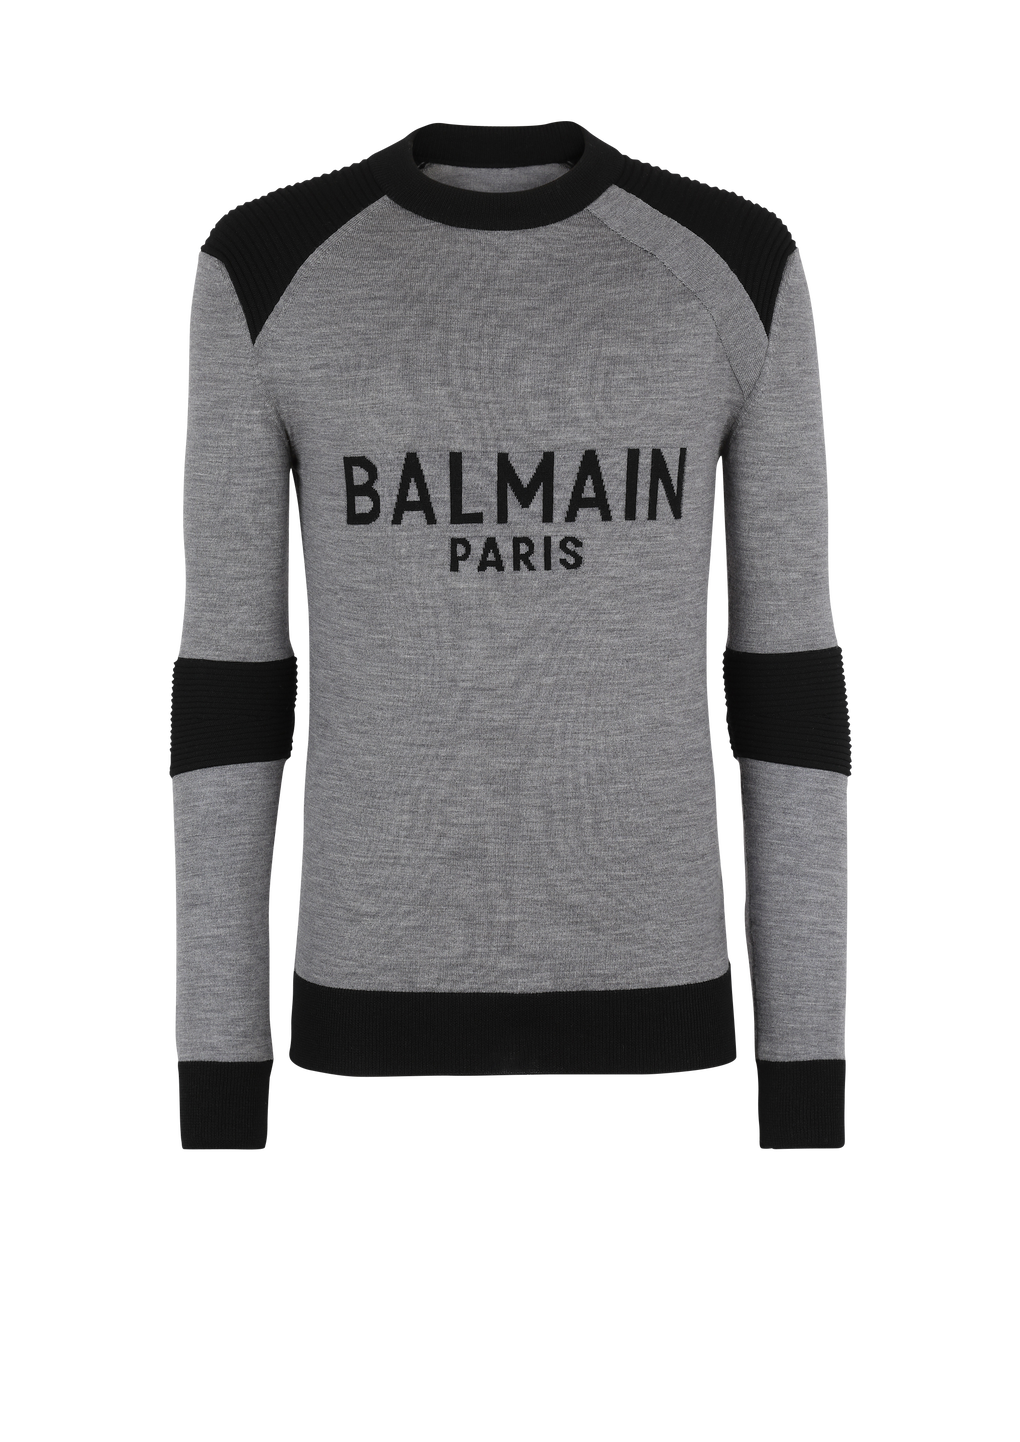 Balmain Paris 로고 디테일 울 스웨터, 회색, hi-res